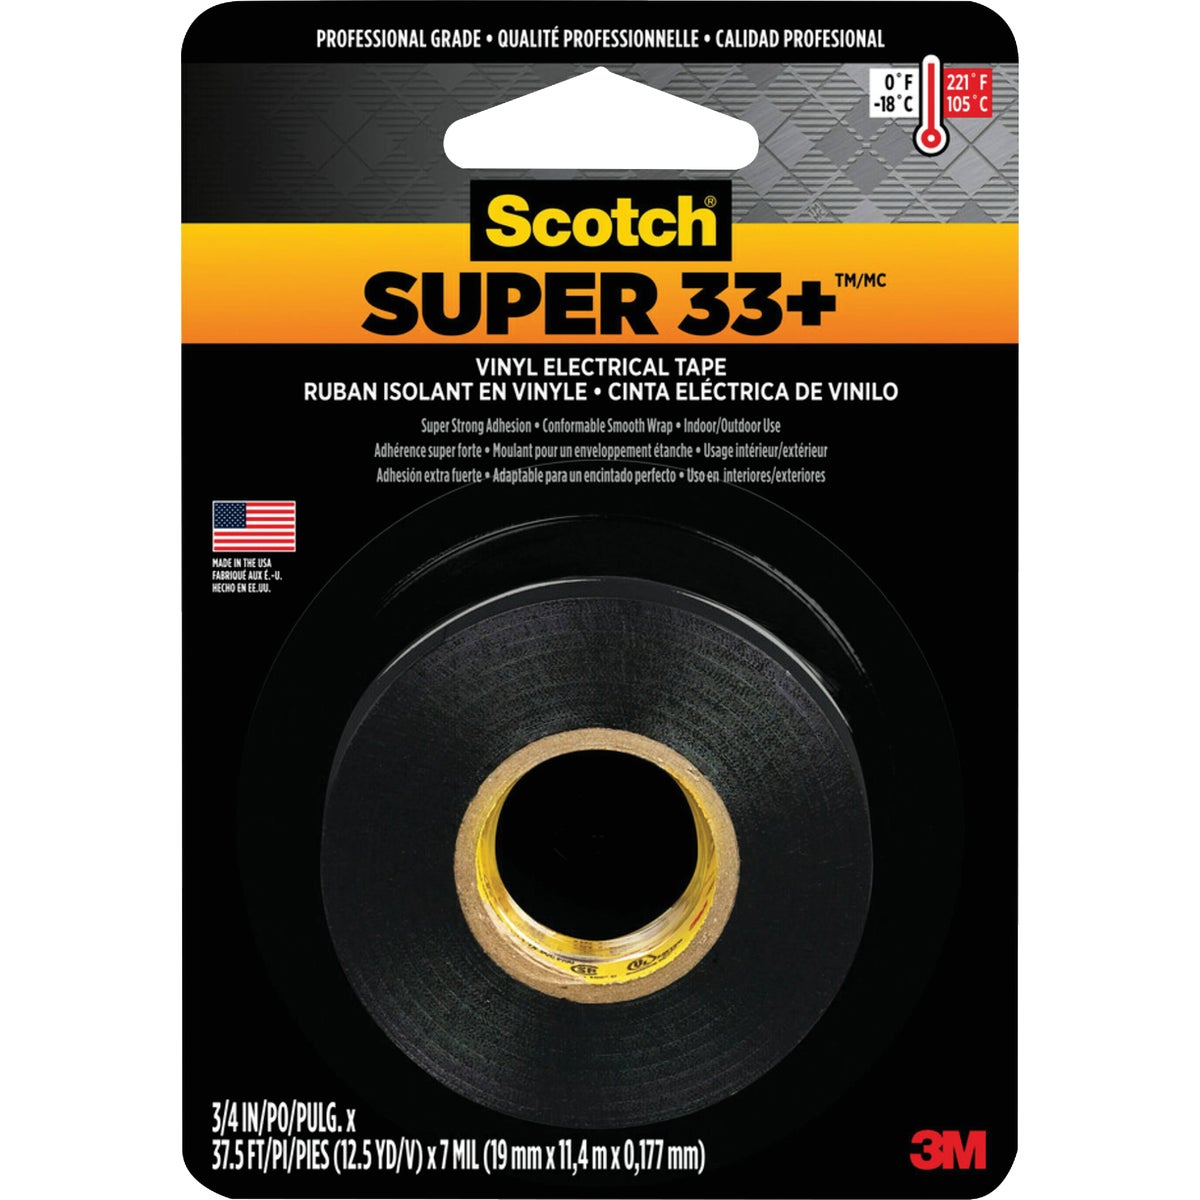 Scotch Super 33+ General Application 3/4 In. x 450 In. Electrical Tape